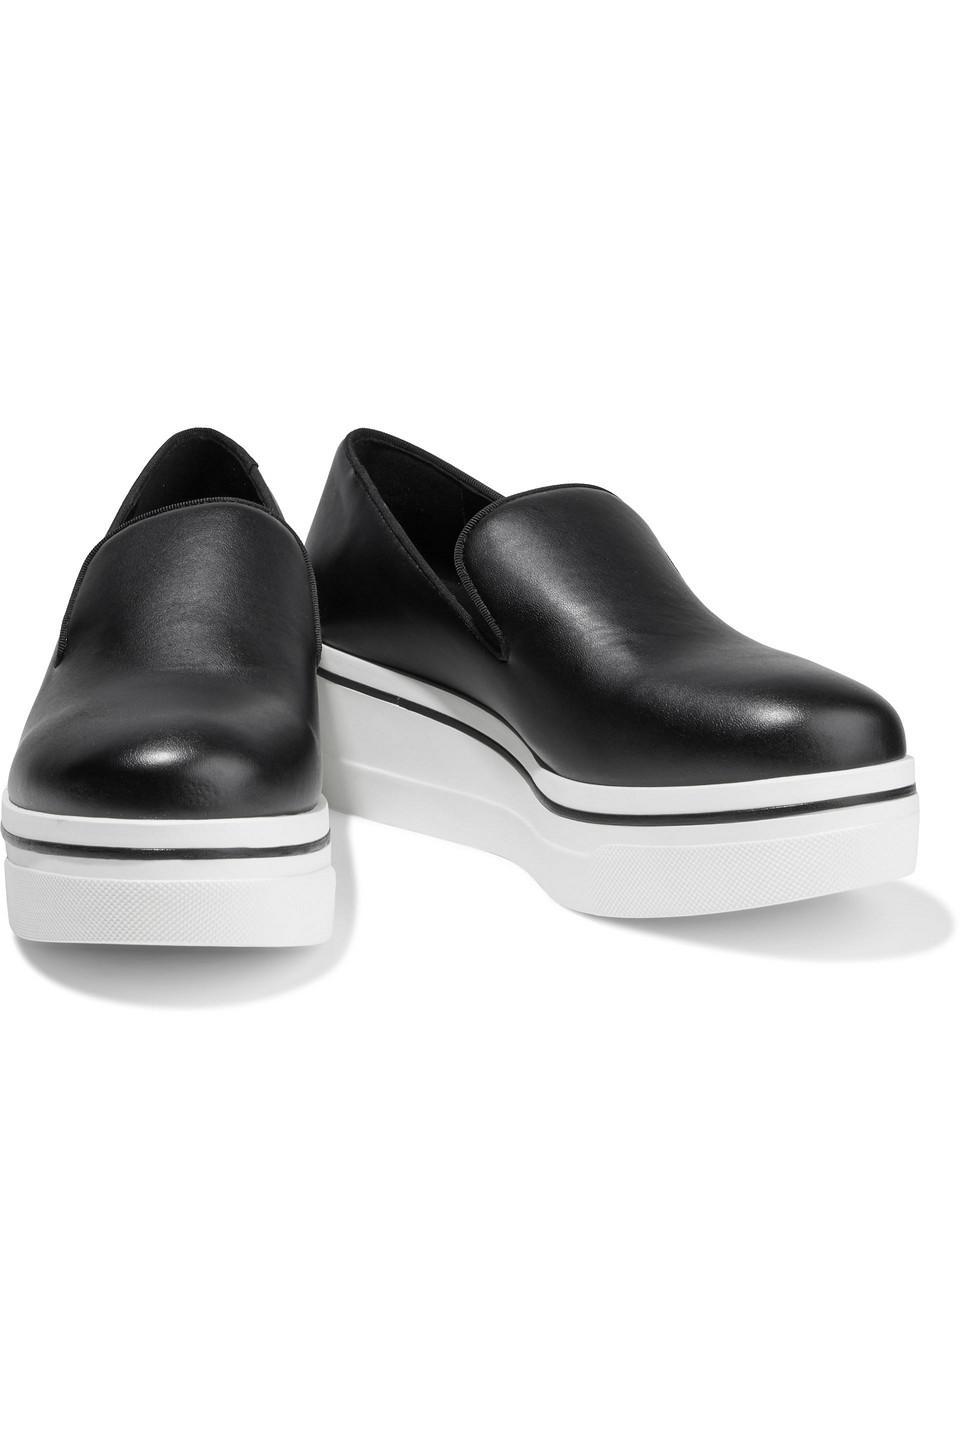 Stella McCartney Binx Faux Leather Platform Slip-on Sneakers in Black | Lyst